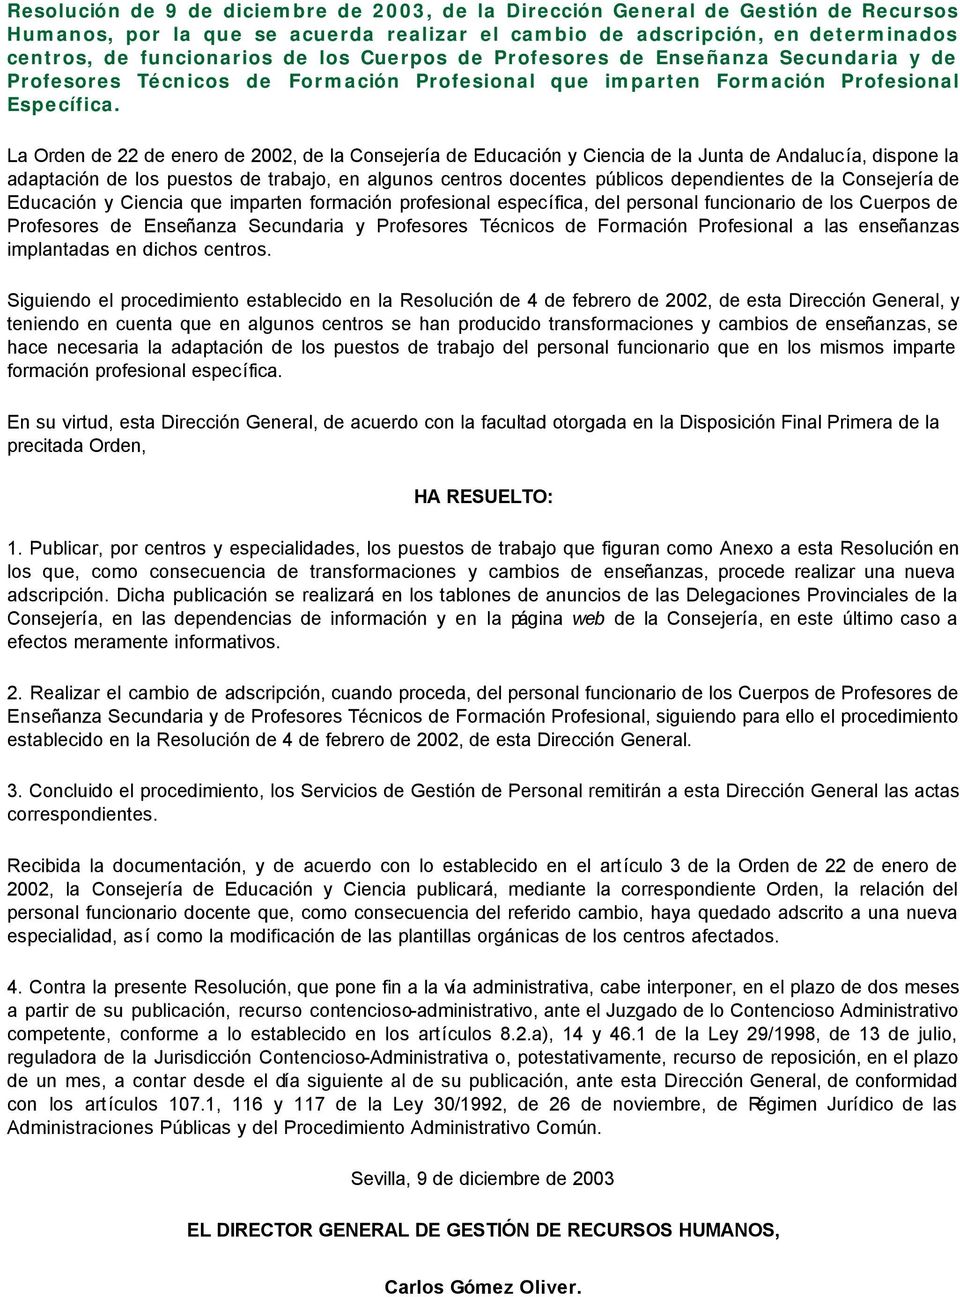 La Orden de 22 de enero de 2002, de la Consejería de Educación y Ciencia de la Junta de Andalucía, dispone la adaptación de los puestos de trabajo, en algunos centros docentes públicos dependientes